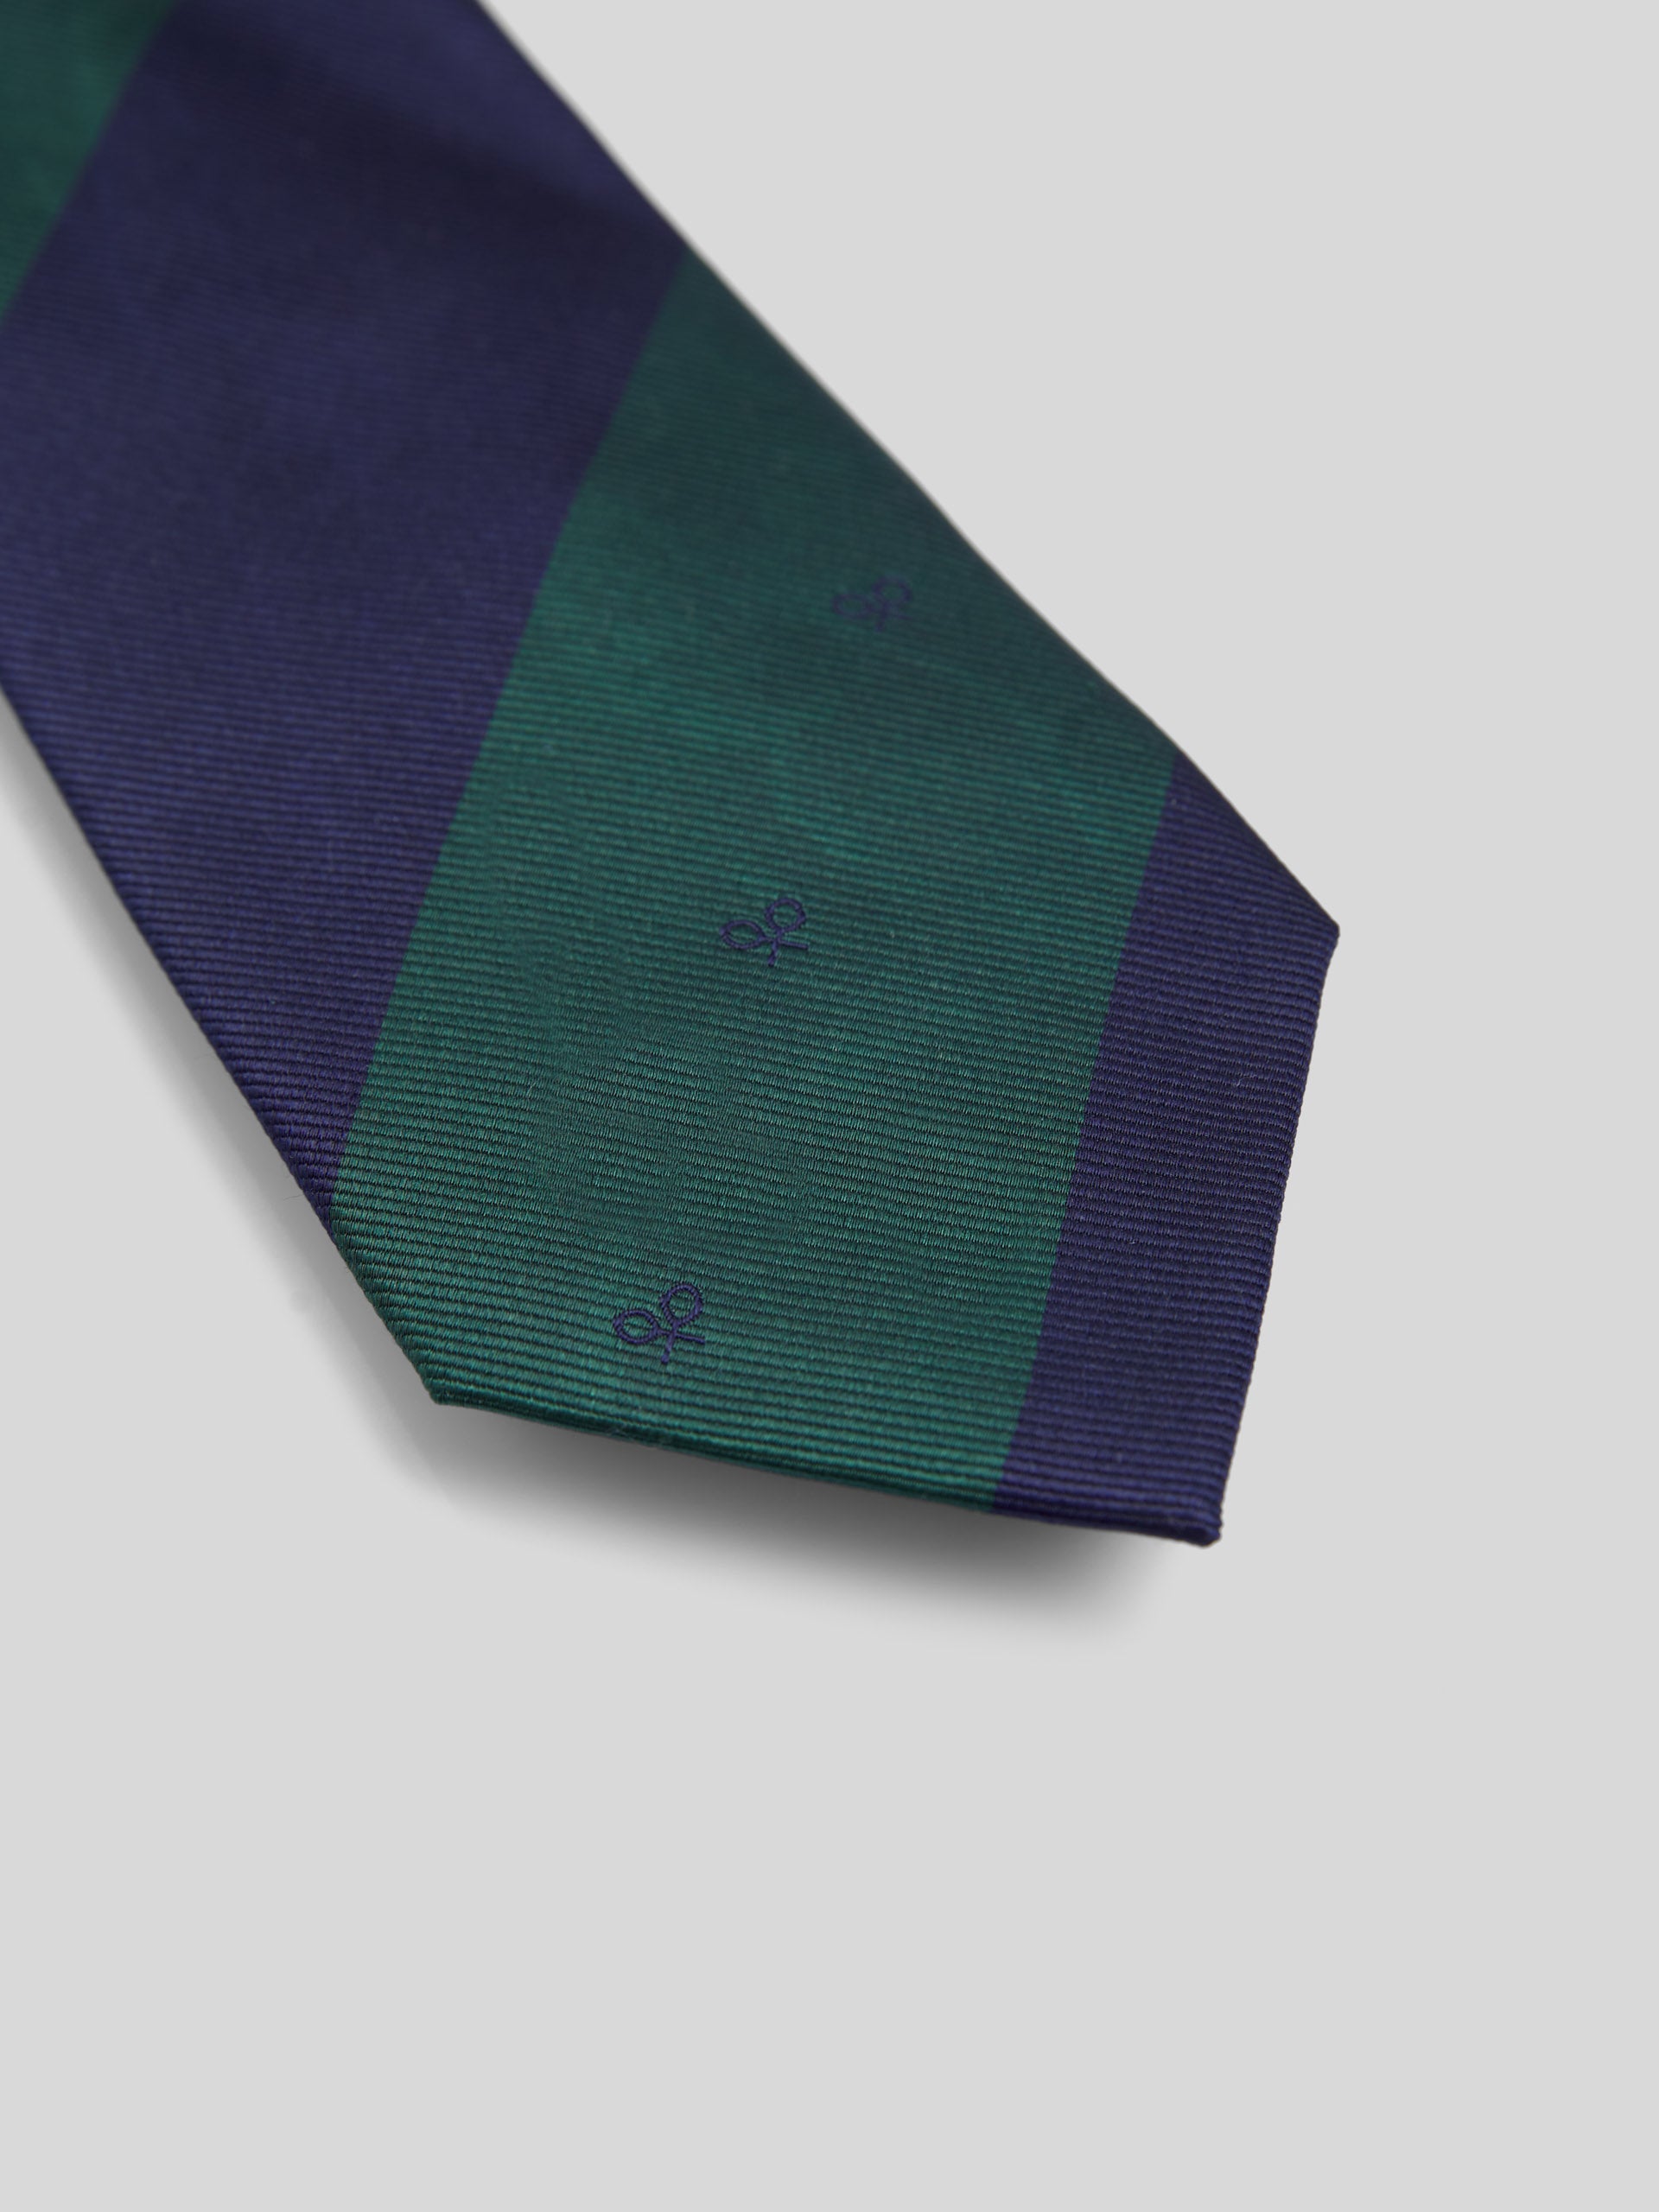 Corbata silbon rayas verdes raquetas